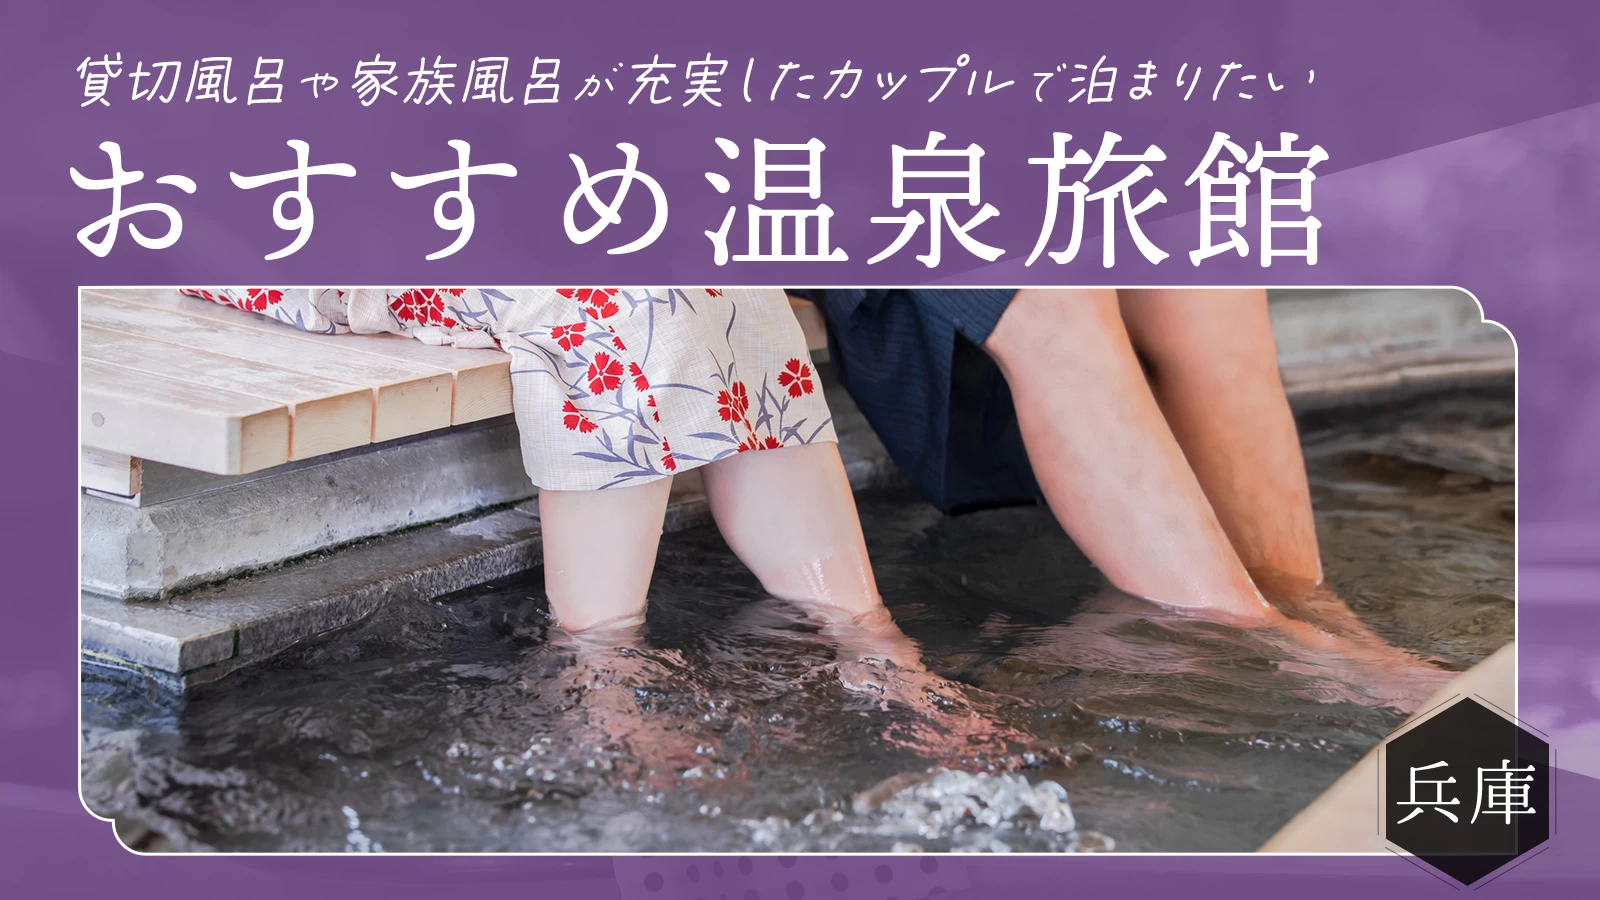 【兵庫】貸切風呂や家族風呂が充実したカップルで泊まりたいおすすめ温泉宿10選